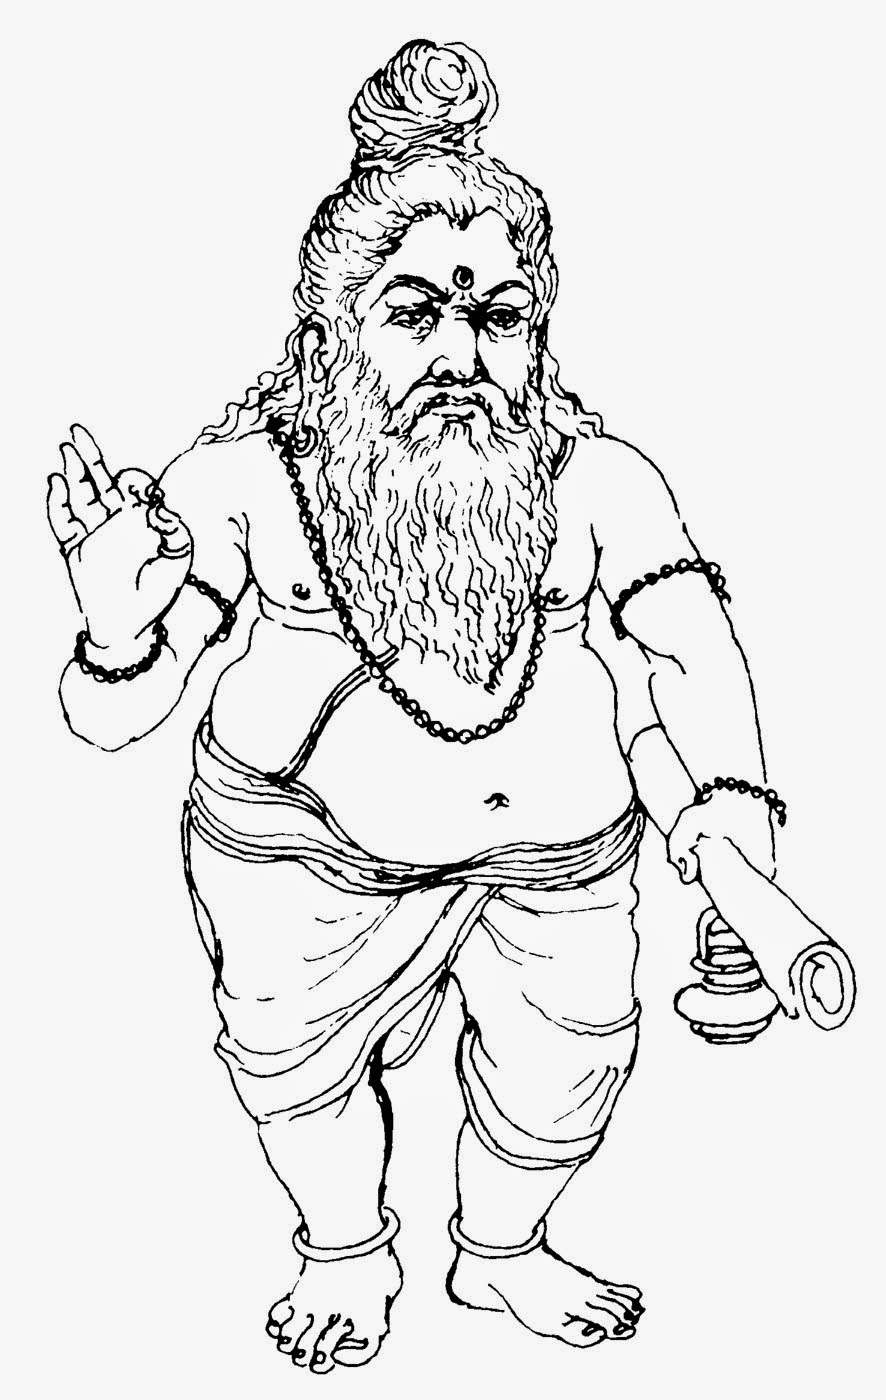 Gods-Leaders-Images-Drawings: Spiritual Leaders and Sadgurus of India ...